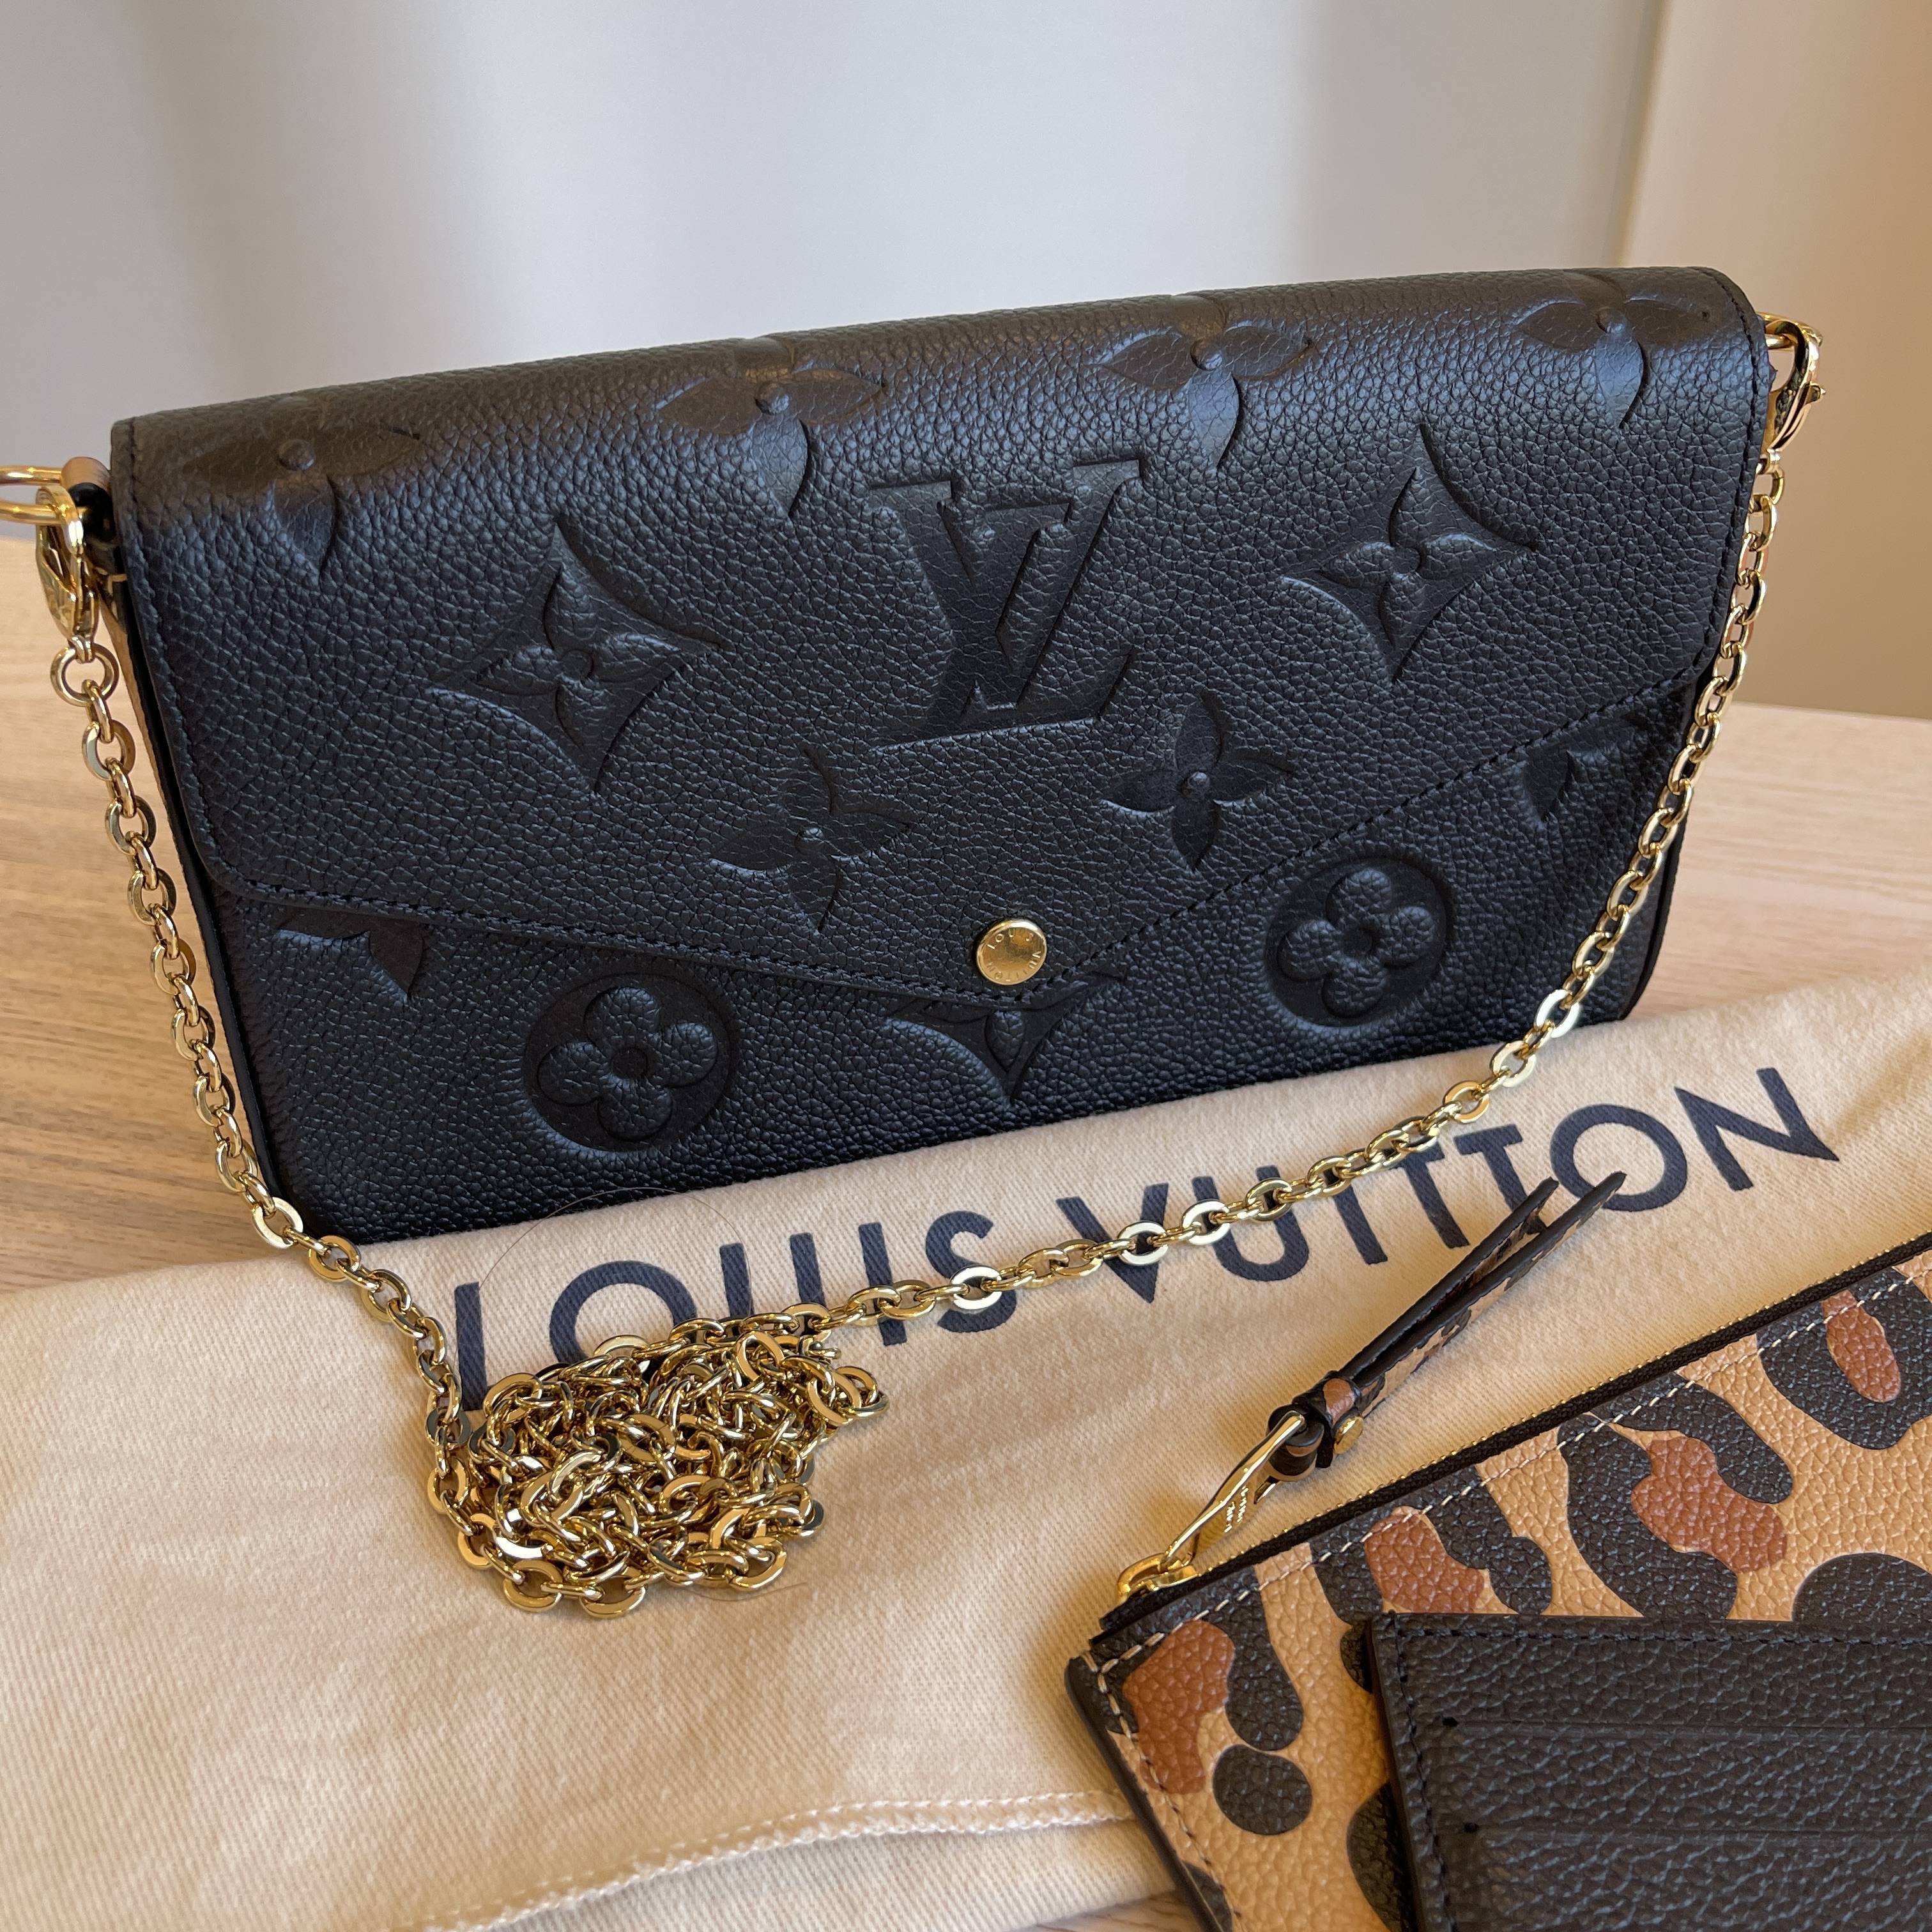 Louis Vuitton Pochette Felicie Wild at Heart Black